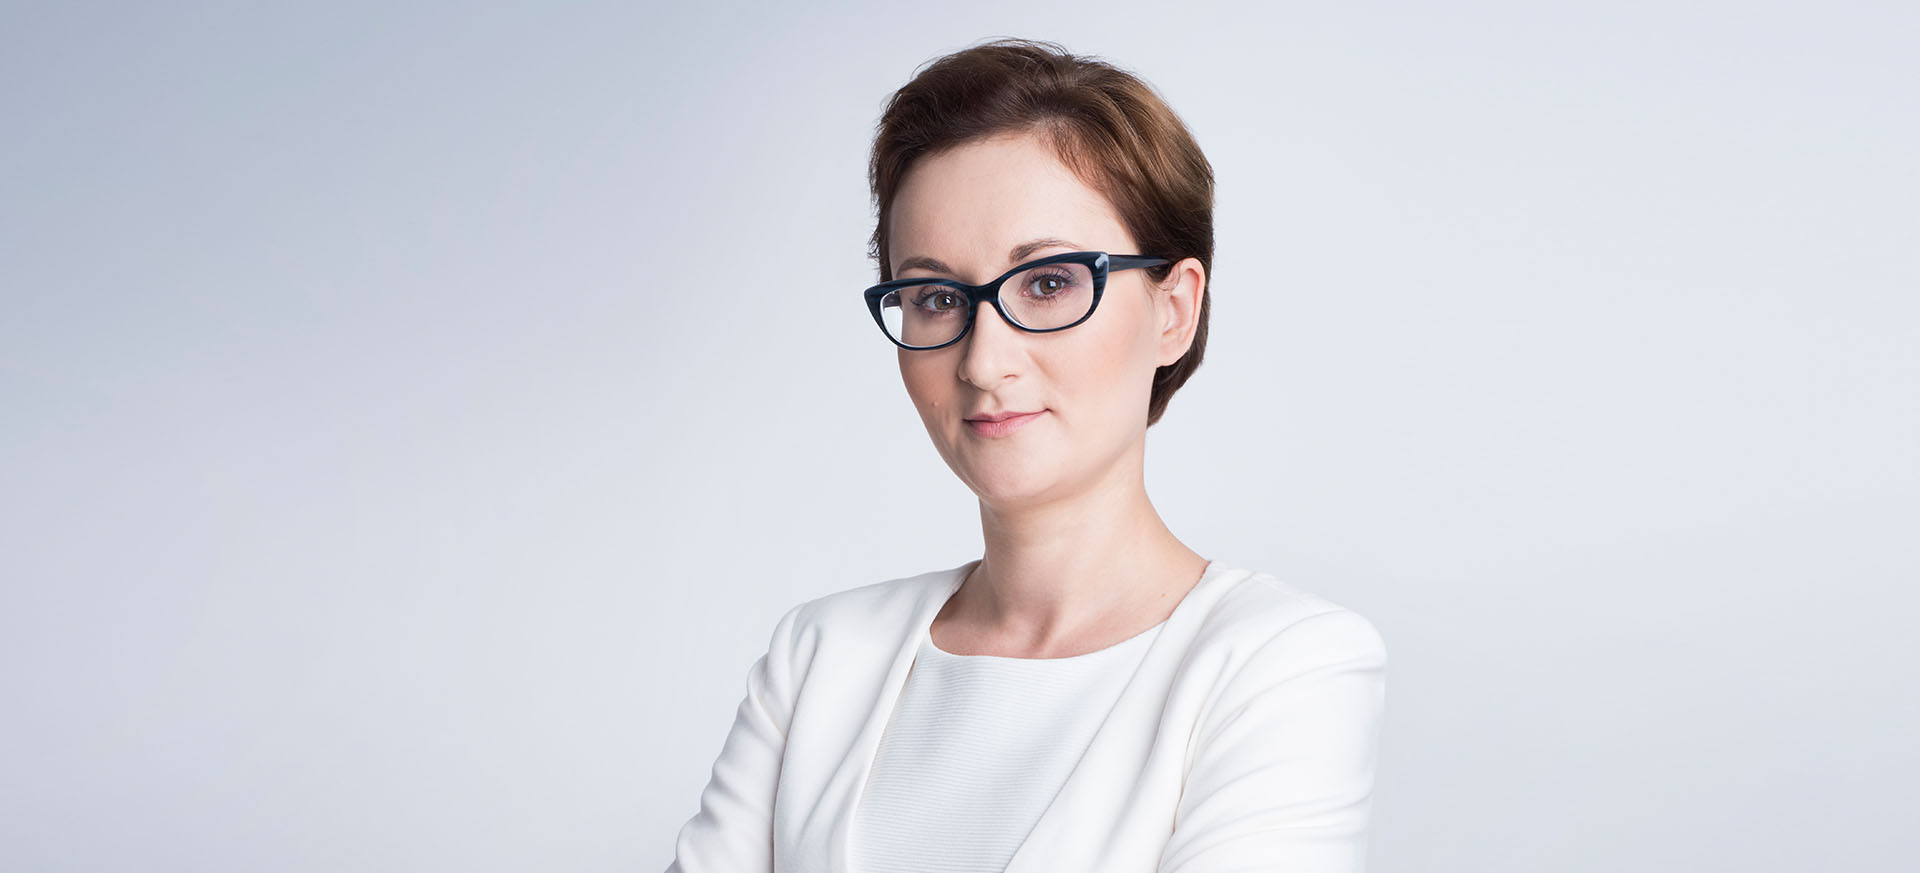 Attorney-at-law, Doctor of Juridical Science Kamila Piernik-Wierzbowska 